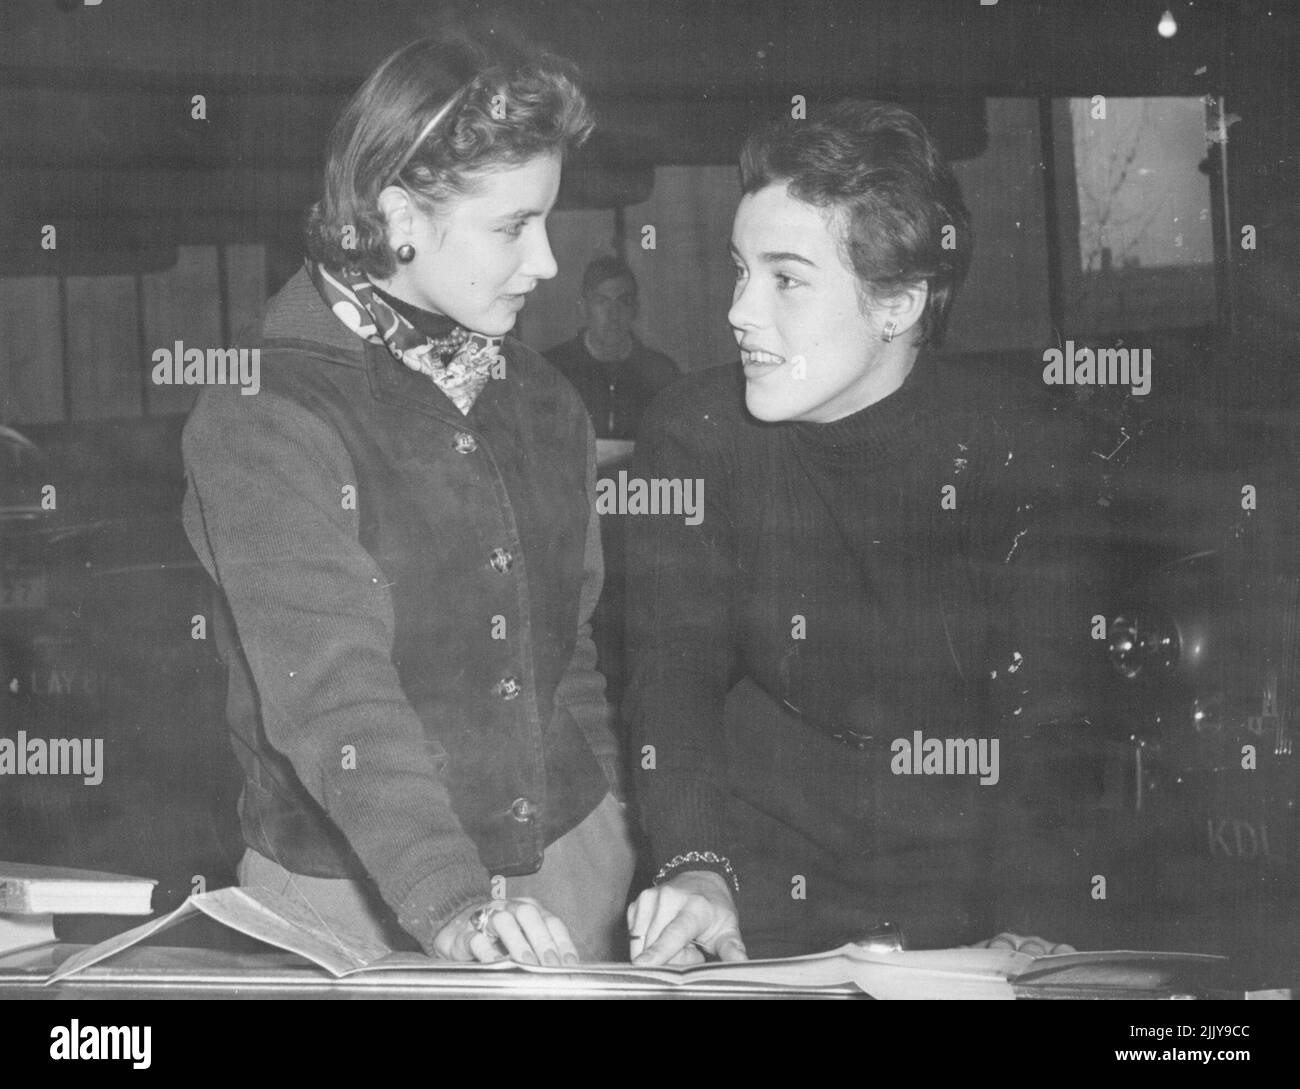 British Women Drivers in 1 200-Mile Rally -- Miss Pat Moss, à droite, sœur de Stirling Moss, pilote de course britannique de crack, et sa co-pilote Mme S. Cooper, font un check-out de dernière minute avant de partir jeudi sur leur trajet de 1 200 miles des îles britanniques en tant que compétiteurs du Motor Cycling Club. Ils ont conduit un M.G. 11 novembre 1955. Banque D'Images